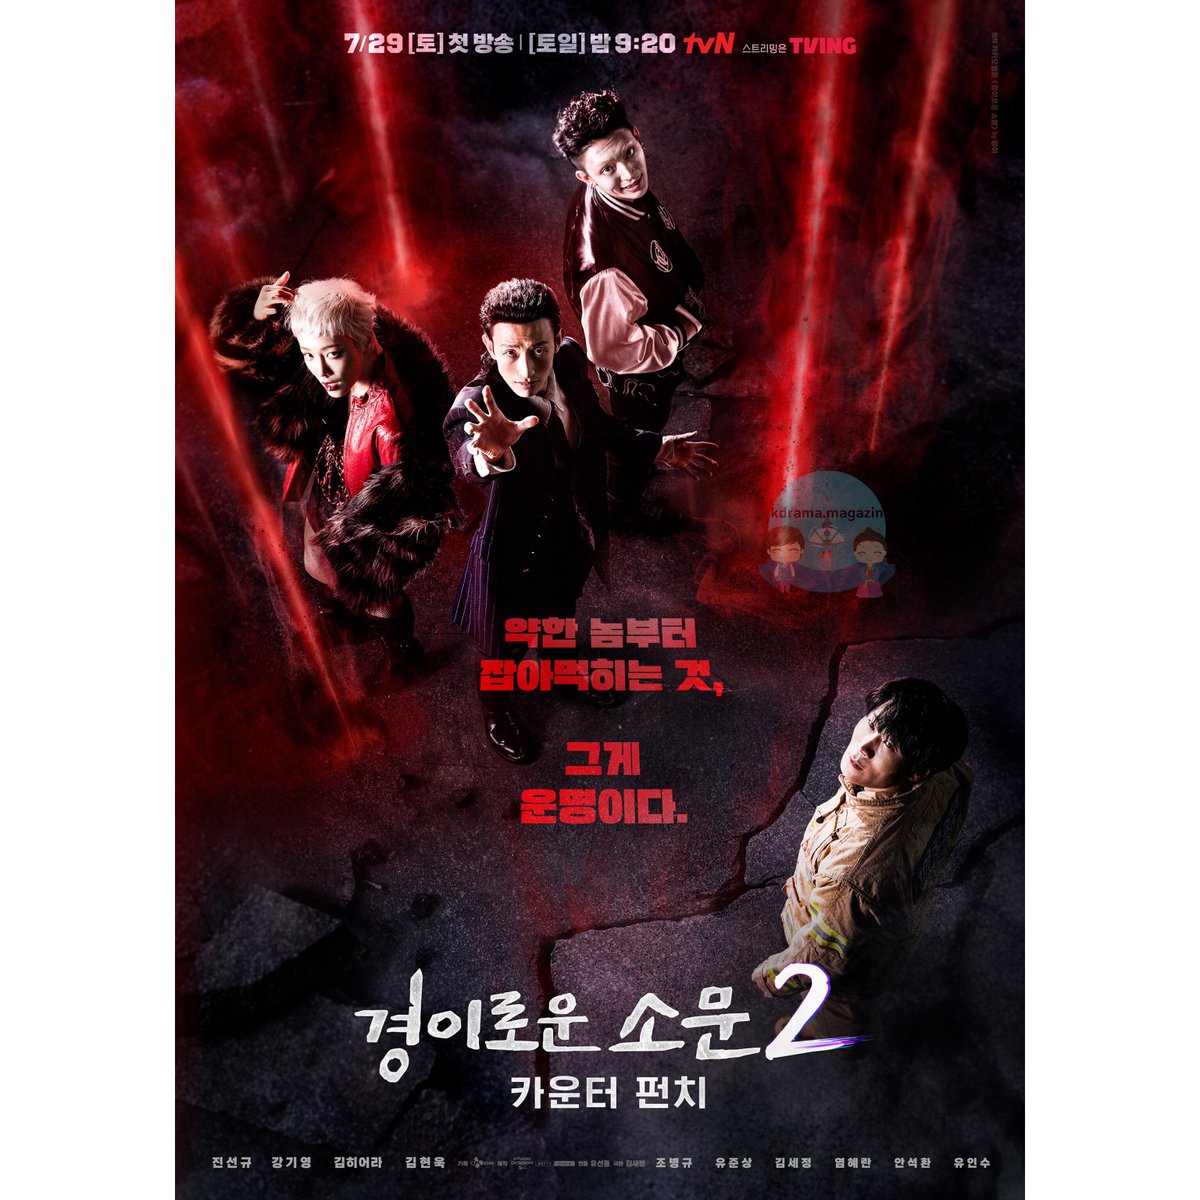 #TheUncannyCounter2 Draması İçin Posterler Yayınlandı.

🗓29 Temmuz'da yayınlanacak.

 #JoByeongGyu #YooJunSang #KimSejeong #YeomHyeRan #AhnSukHwan #JinSunKyu #KangKiYoung #KimHieora #YooInSoo